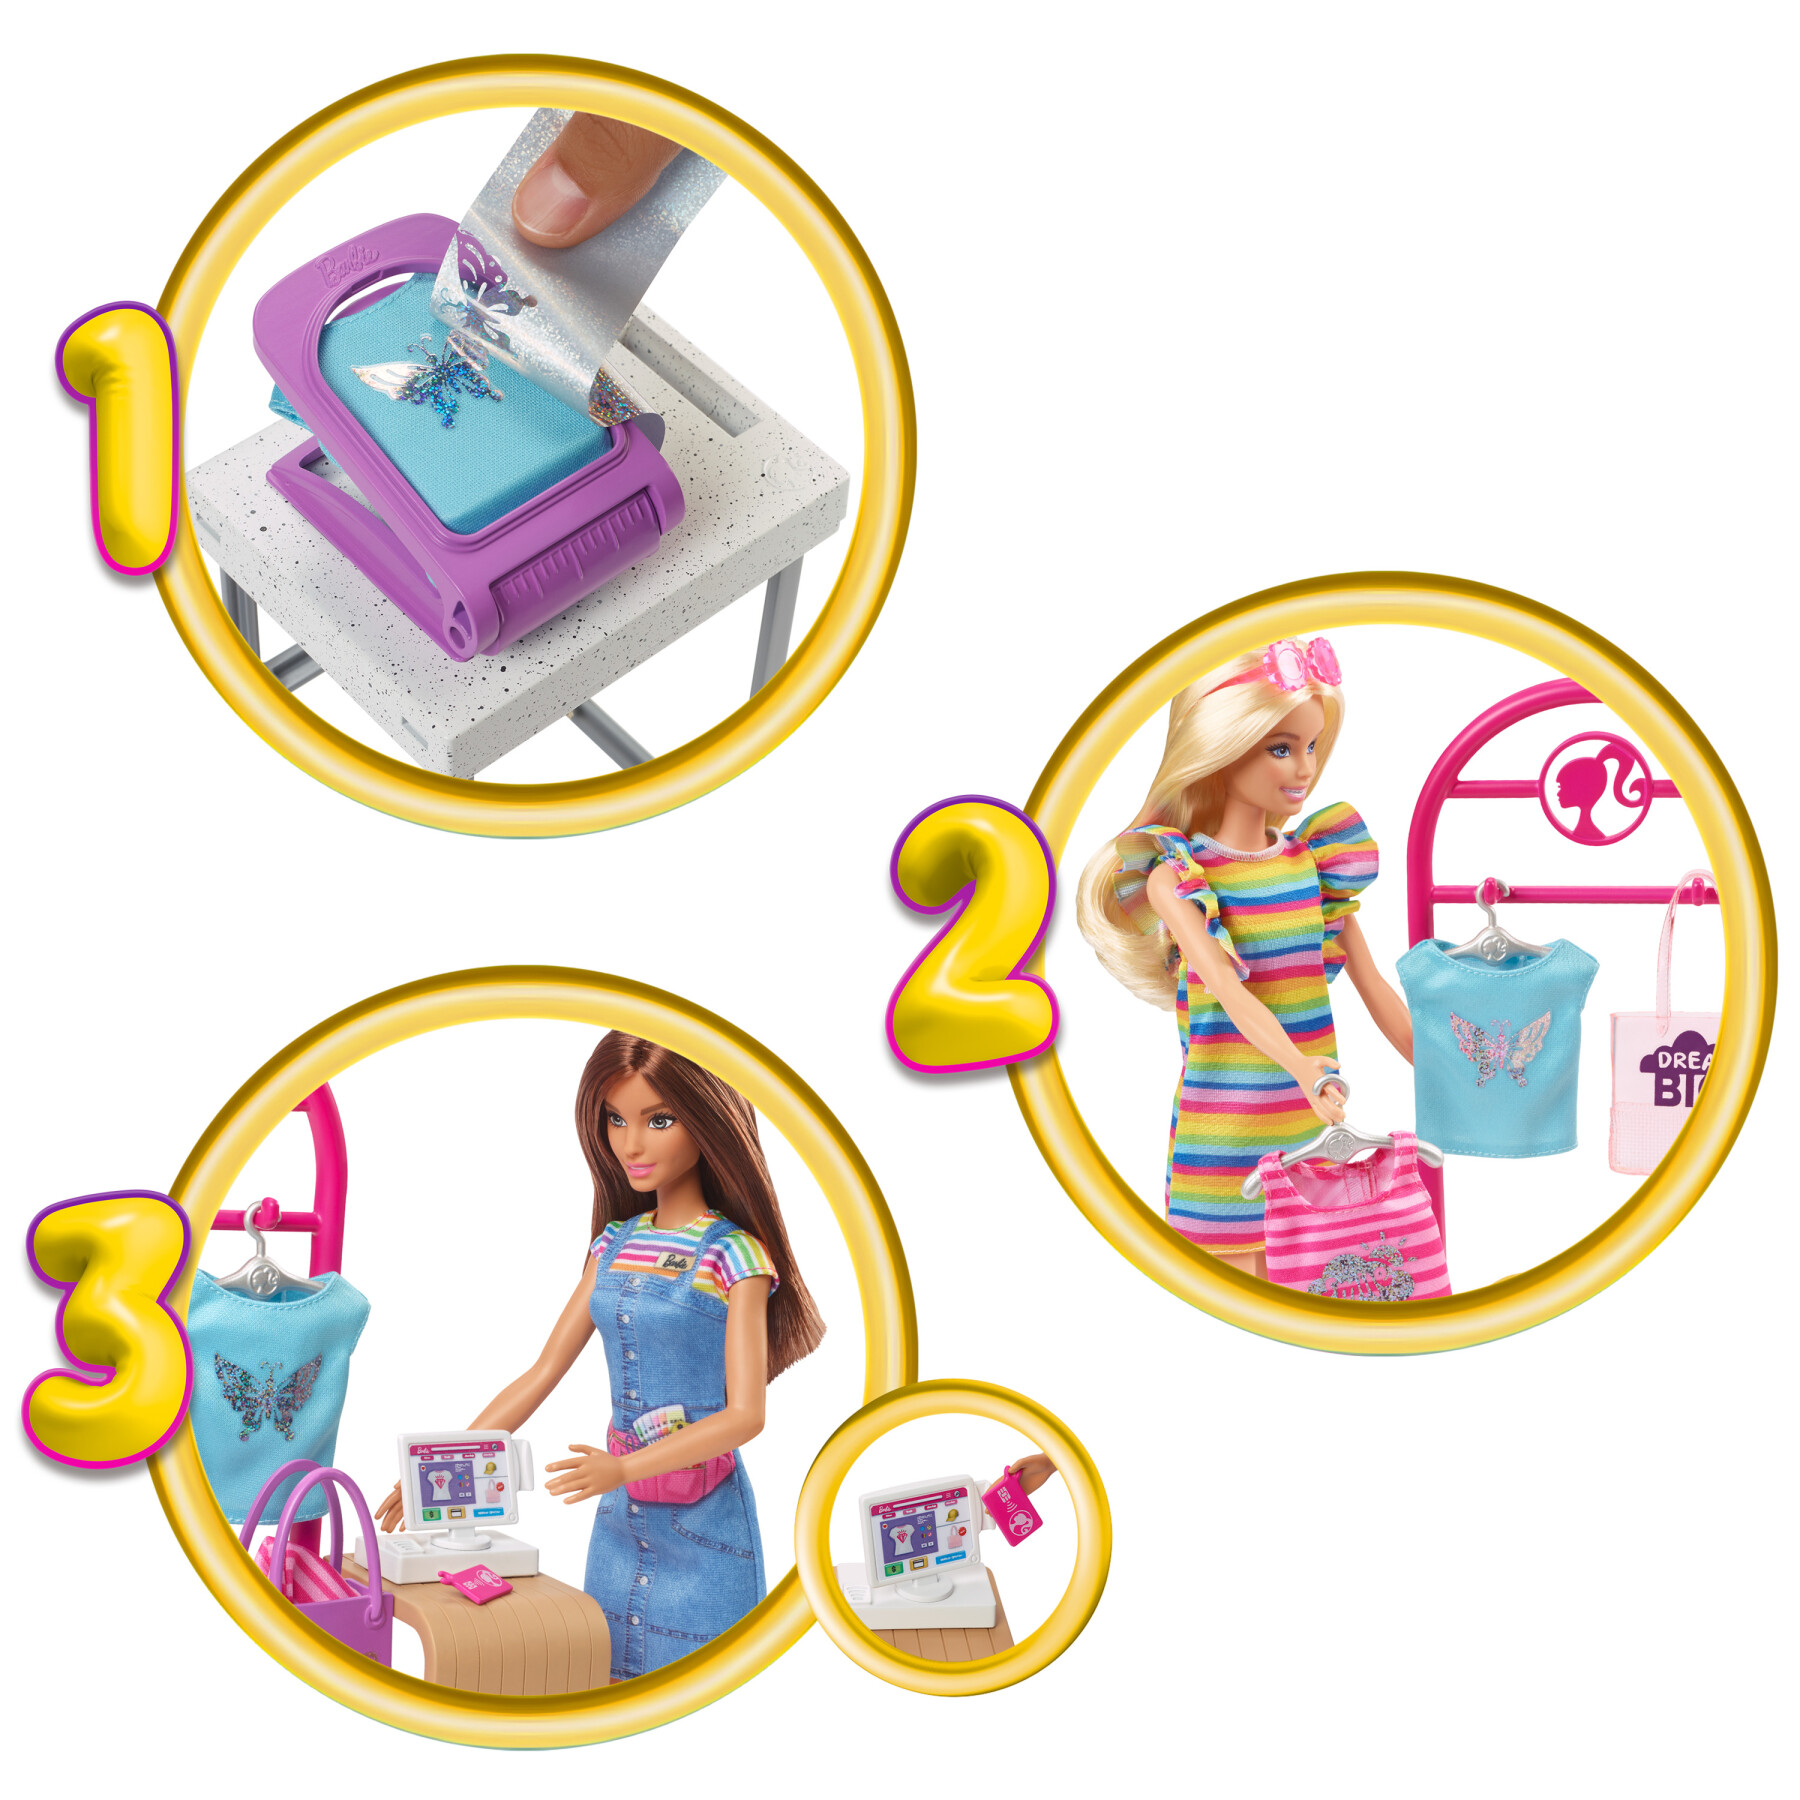 Barbie set accessori scuola playset bambina - Collezionismo In vendita a  Brescia